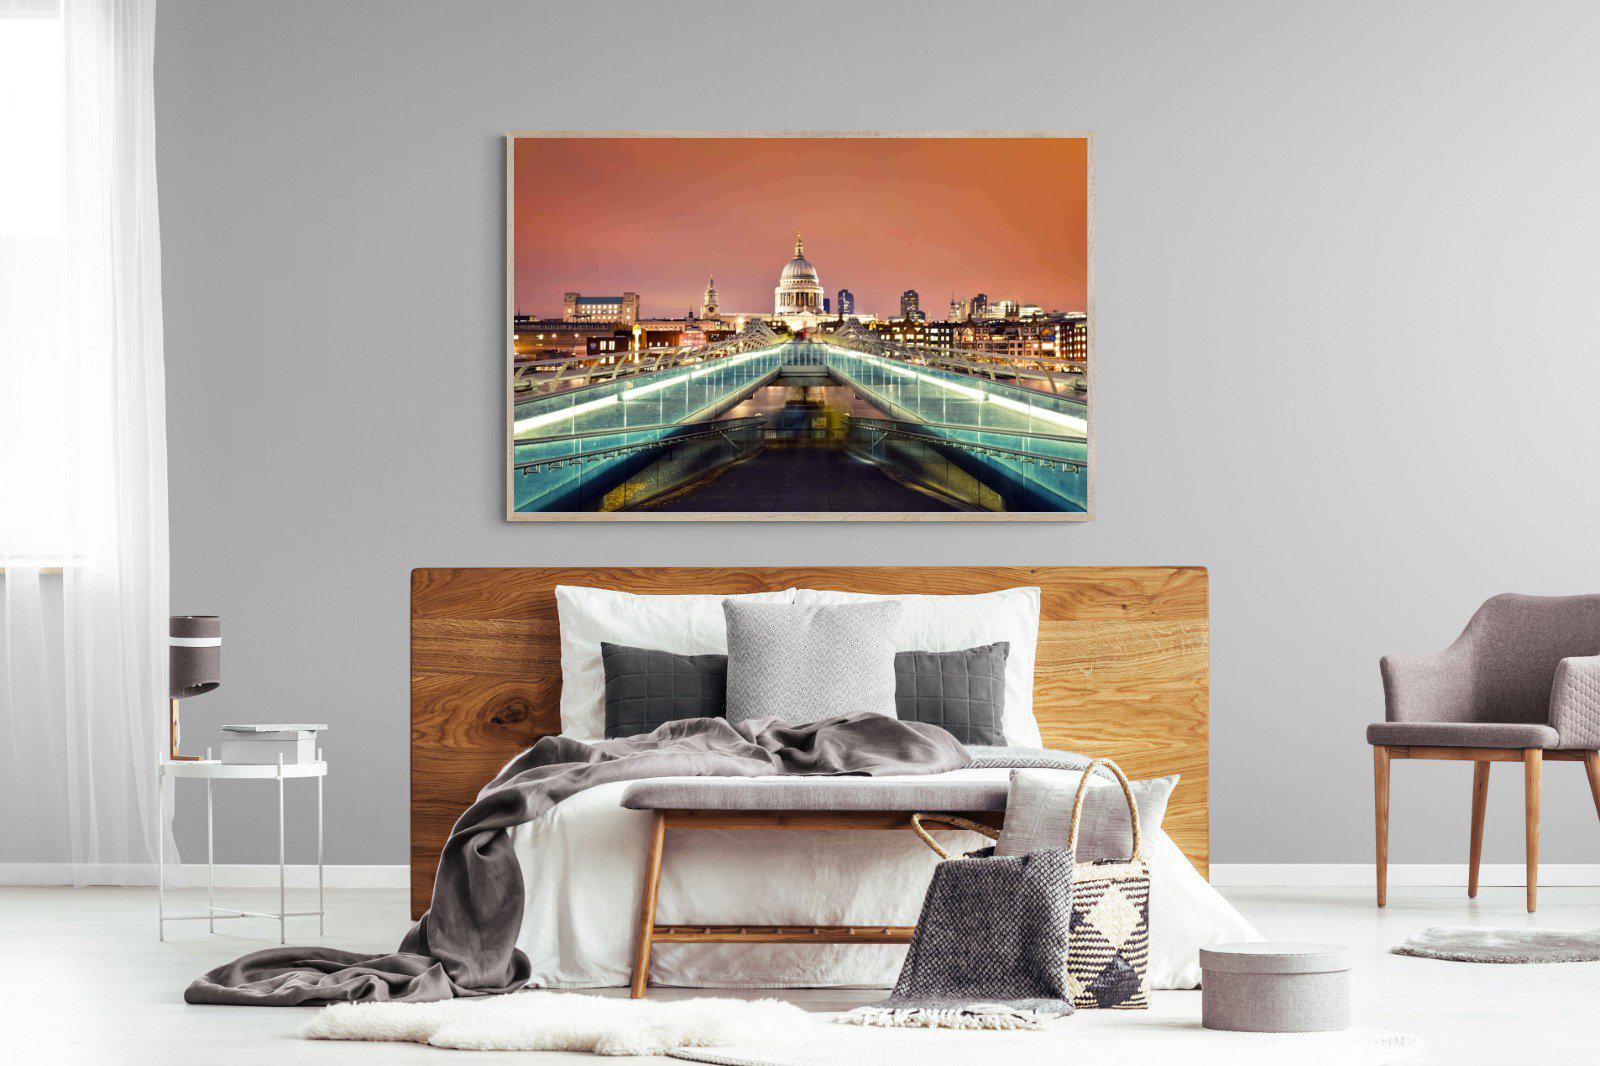 Millenium Bridge-Wall_Art-150 x 100cm-Mounted Canvas-Wood-Pixalot